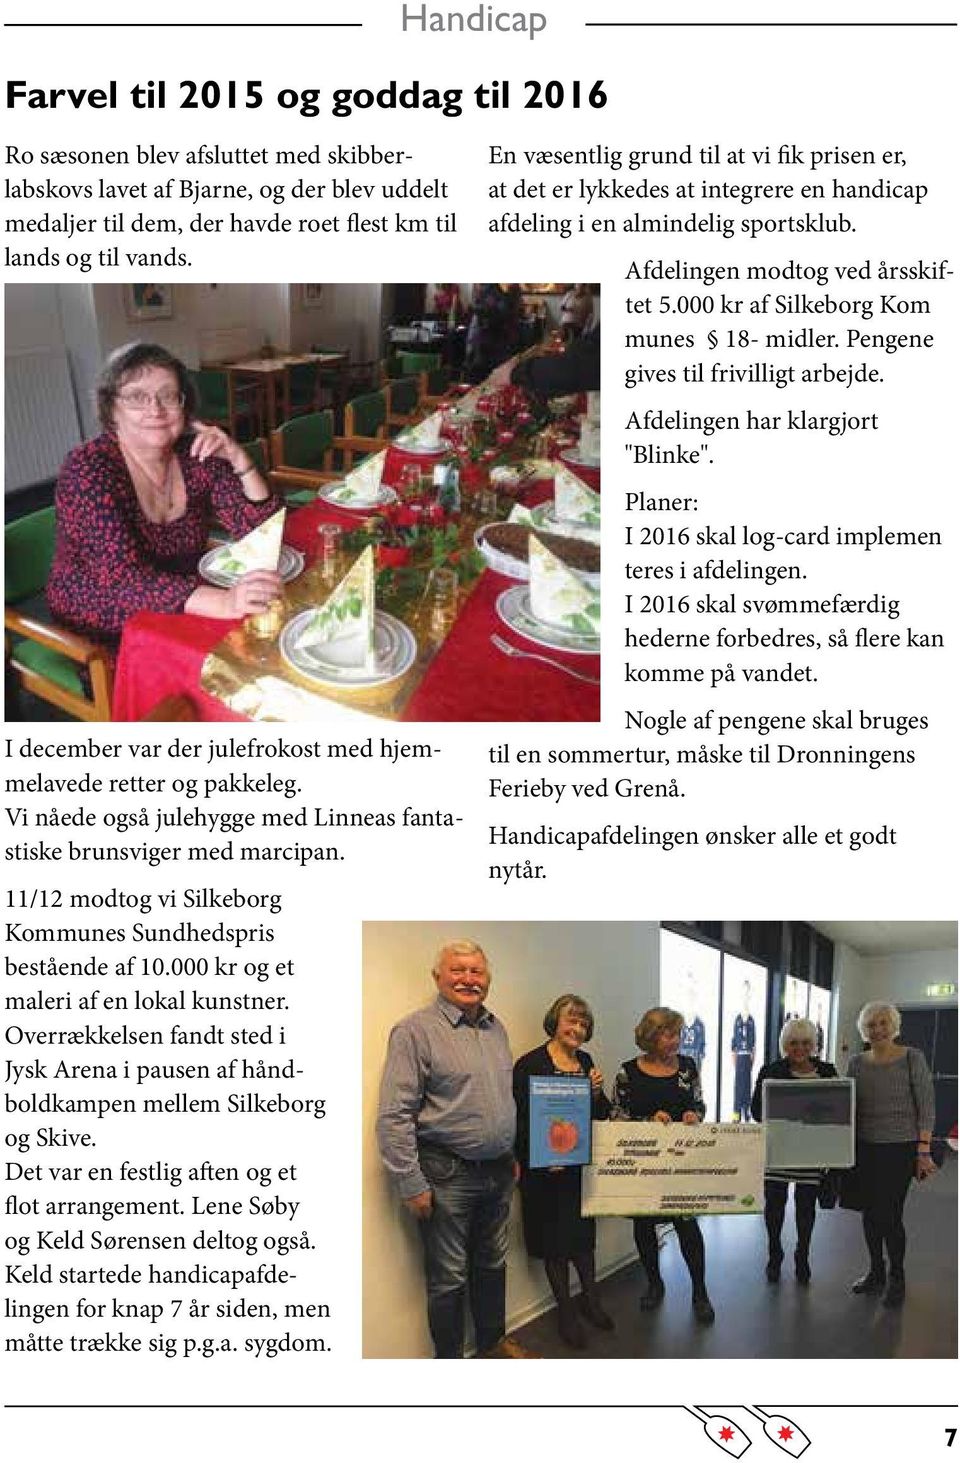 11/12 modtog vi Silkeborg Kommunes Sundhedspris bestående af 10.000 kr og et maleri af en lokal kunstner. Overrækkelsen fandt sted i Jysk Arena i pausen af håndboldkampen mellem Silkeborg og Skive.